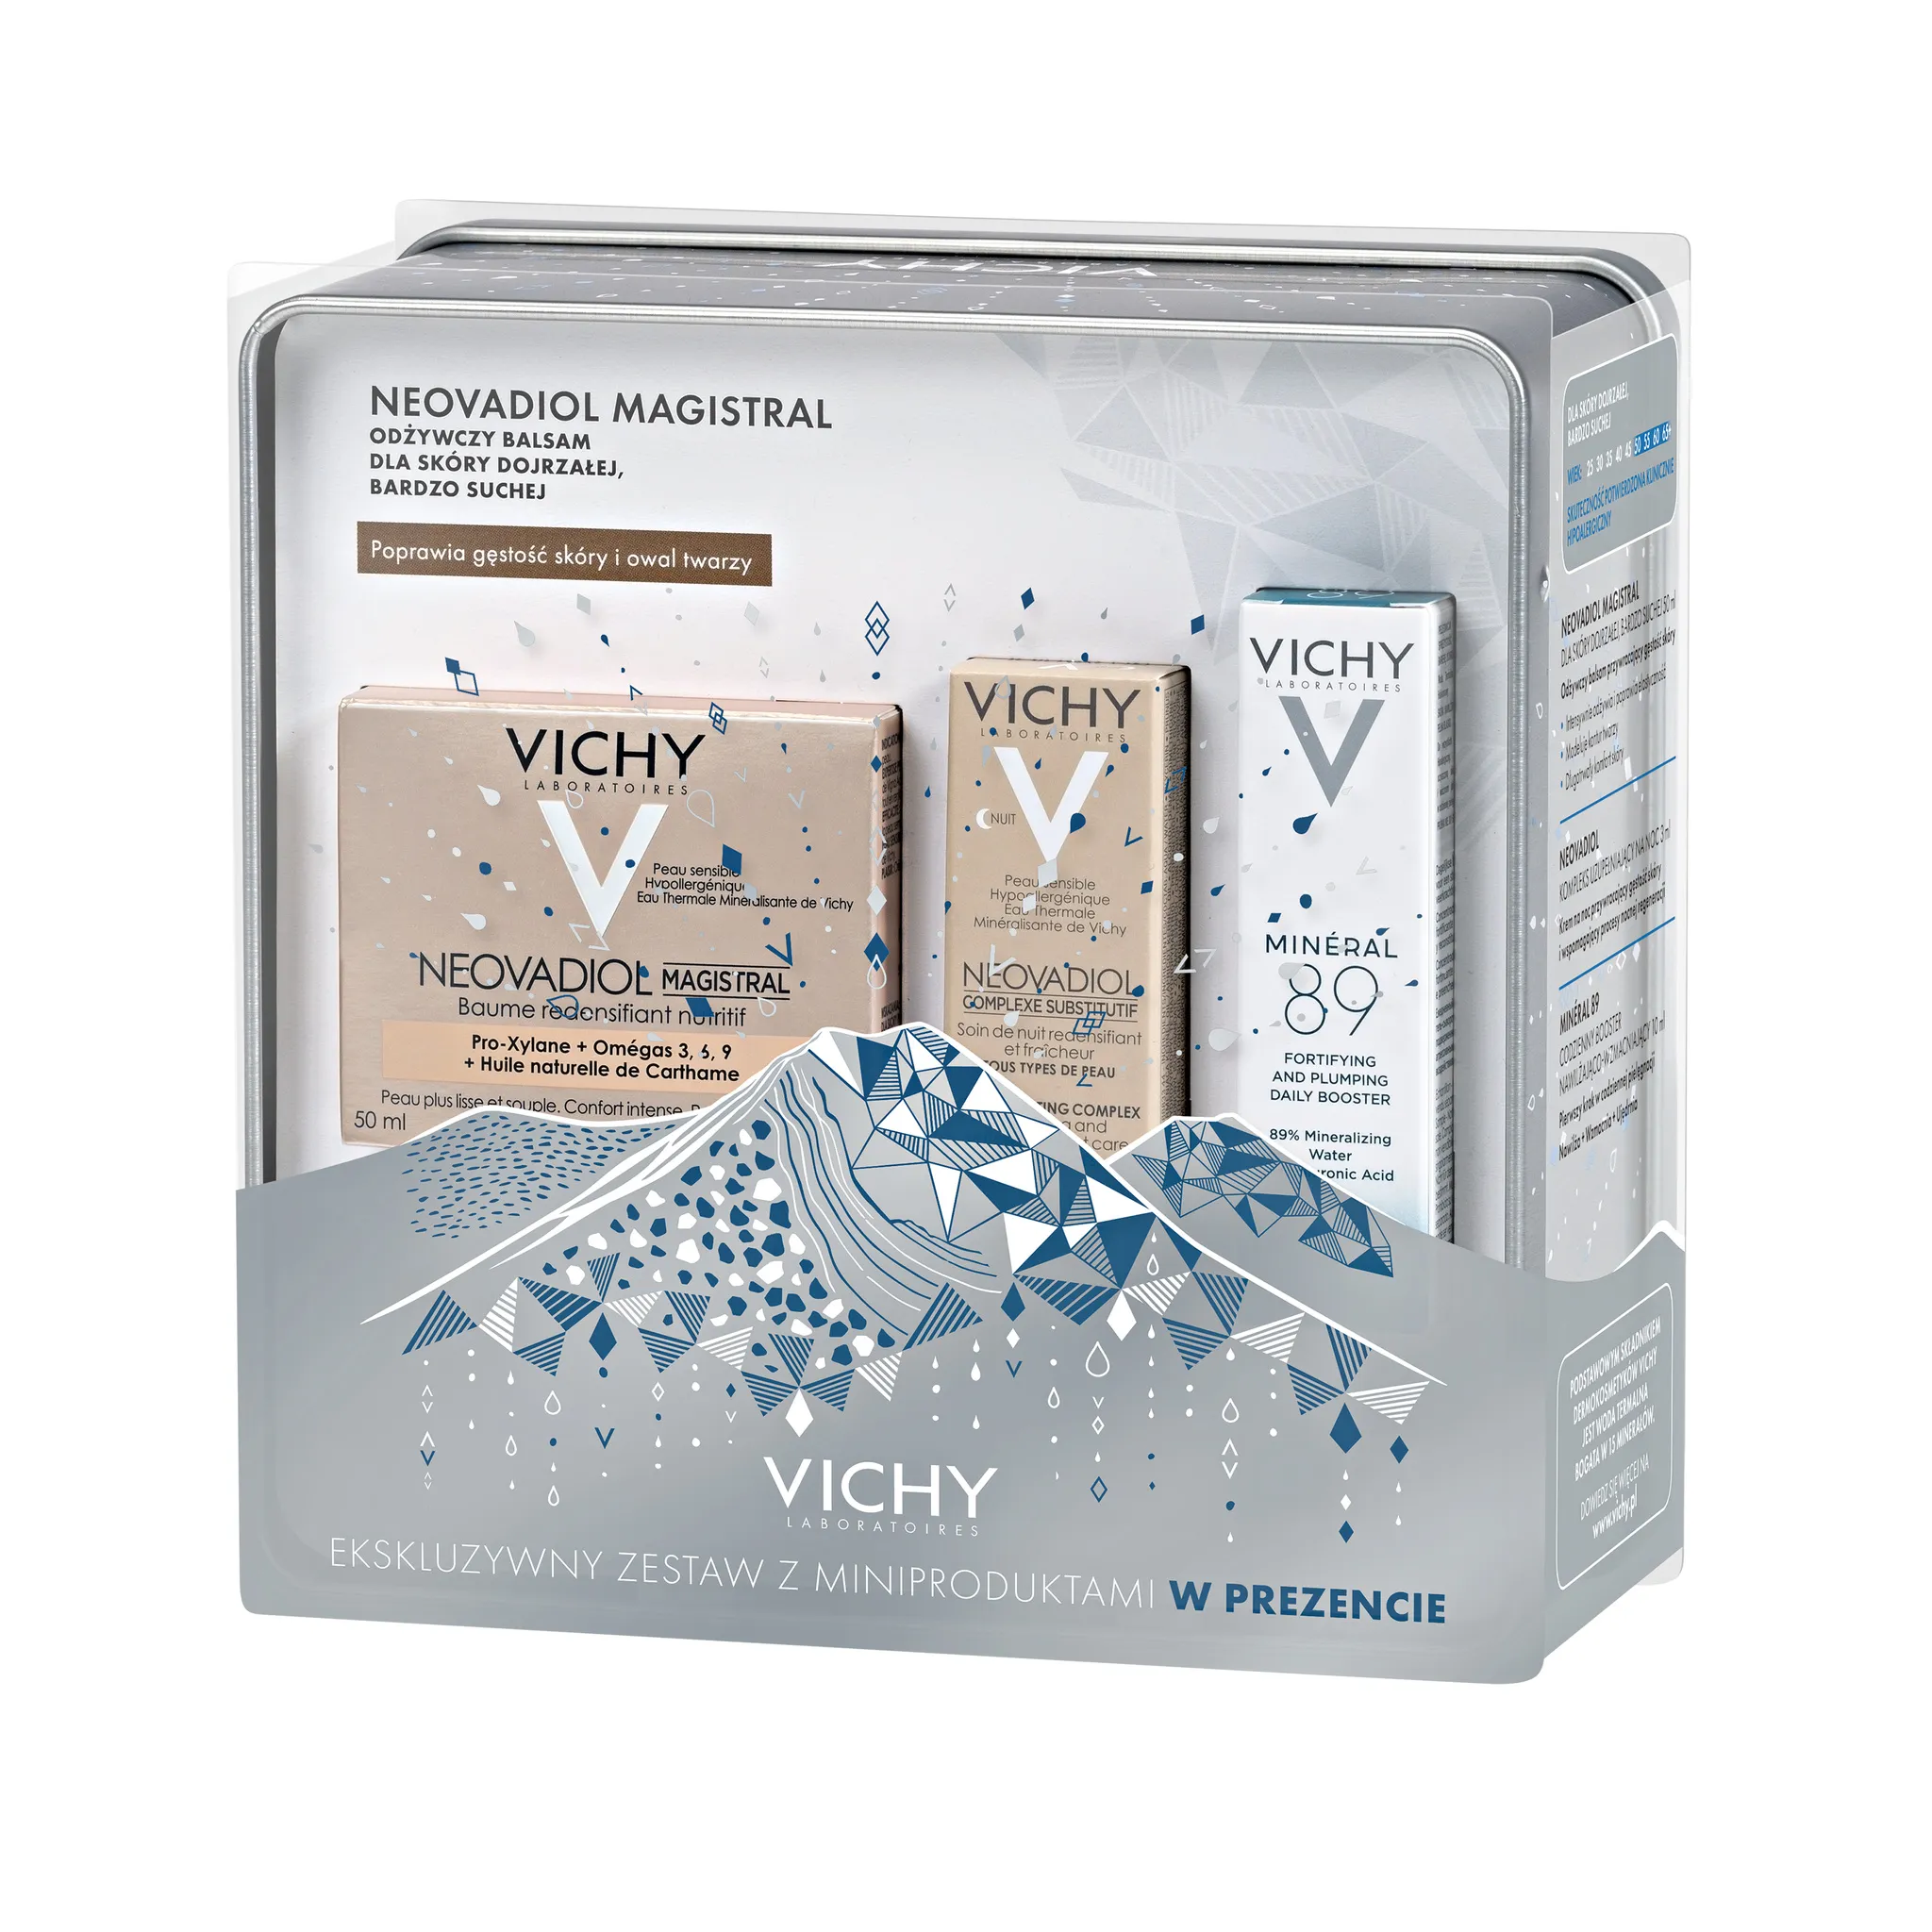 Vichy zestaw Neovadiol, odżywczy balsam przywracający gęstość skóry Magistral, 50 ml +  booster nawilżająco-wzmacniający Mineral 89, 10 ml +krem na noc Kompleks Uzupełniający, 3 ml